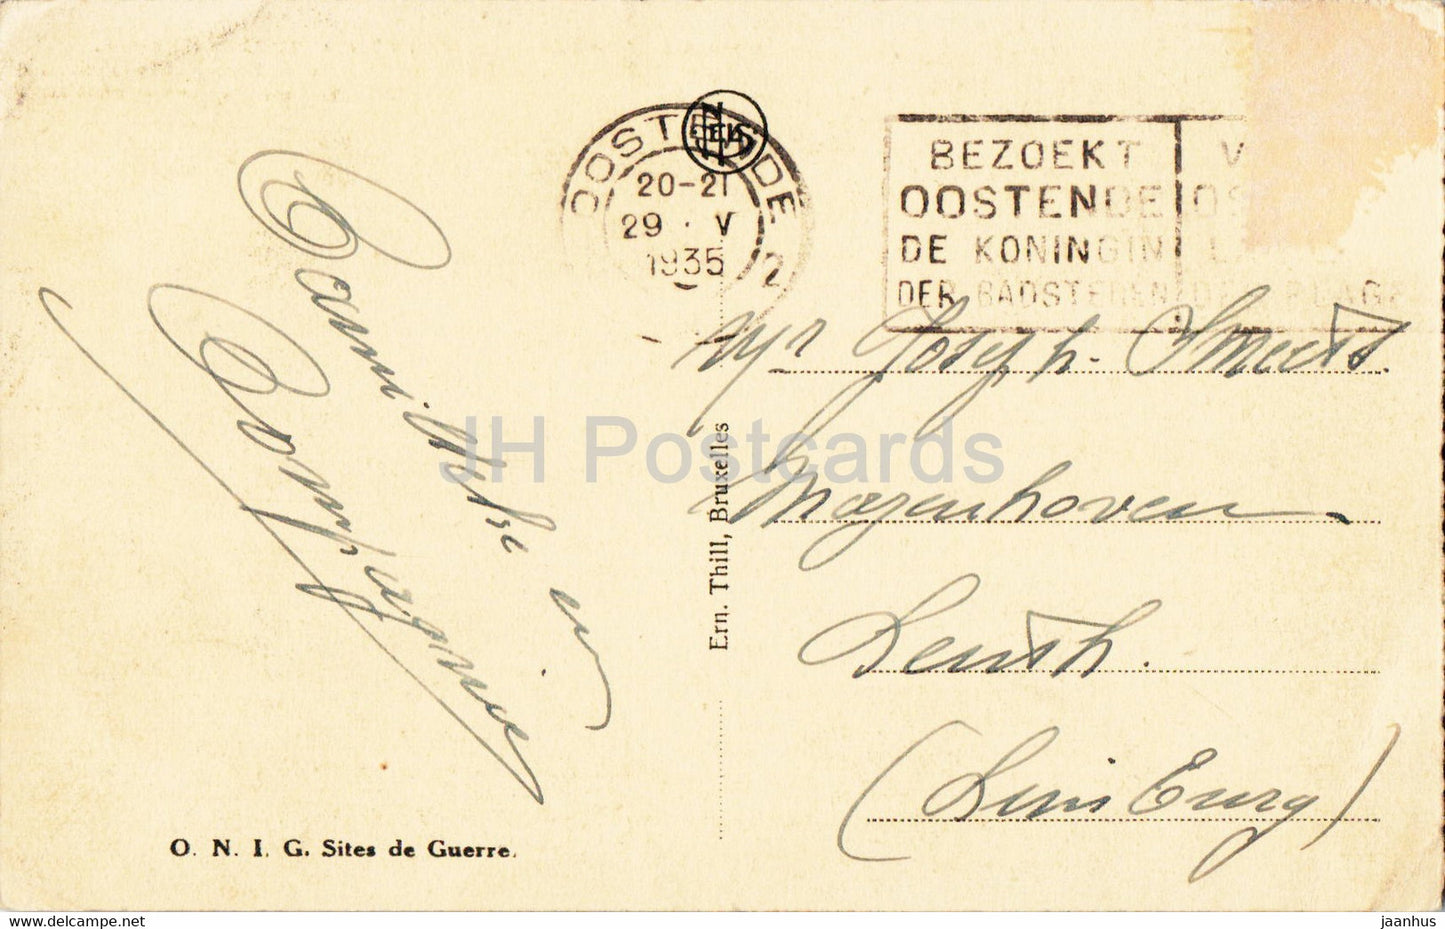 Diksmuide - Boyau de la mort a Dixmude - A Droite - militaire - carte postale ancienne - 1935 - Belgique - utilisé